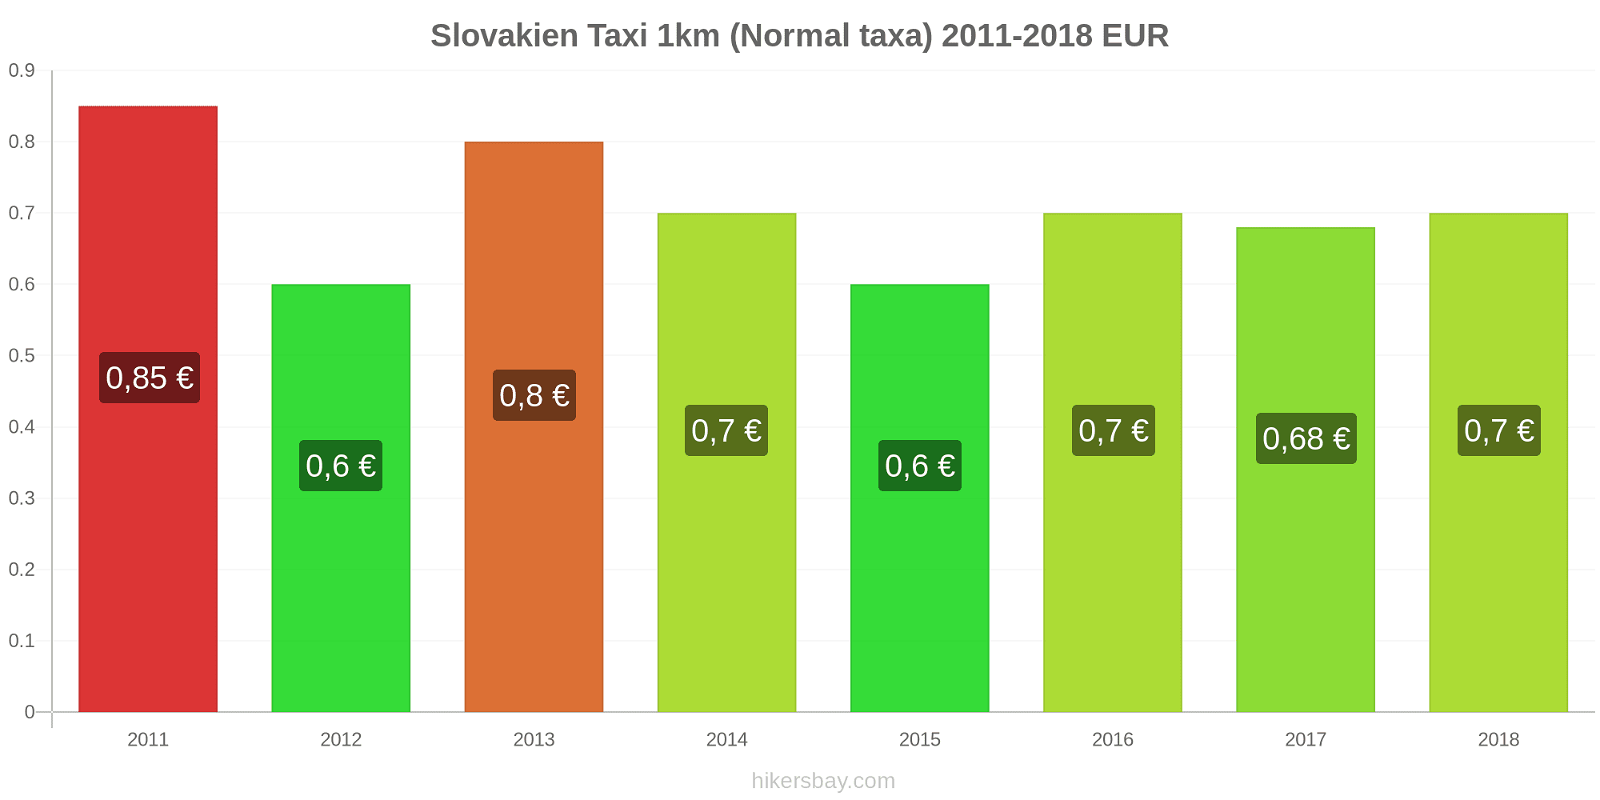 Slovakien prisändringar Taxi 1km (Normal taxa) hikersbay.com